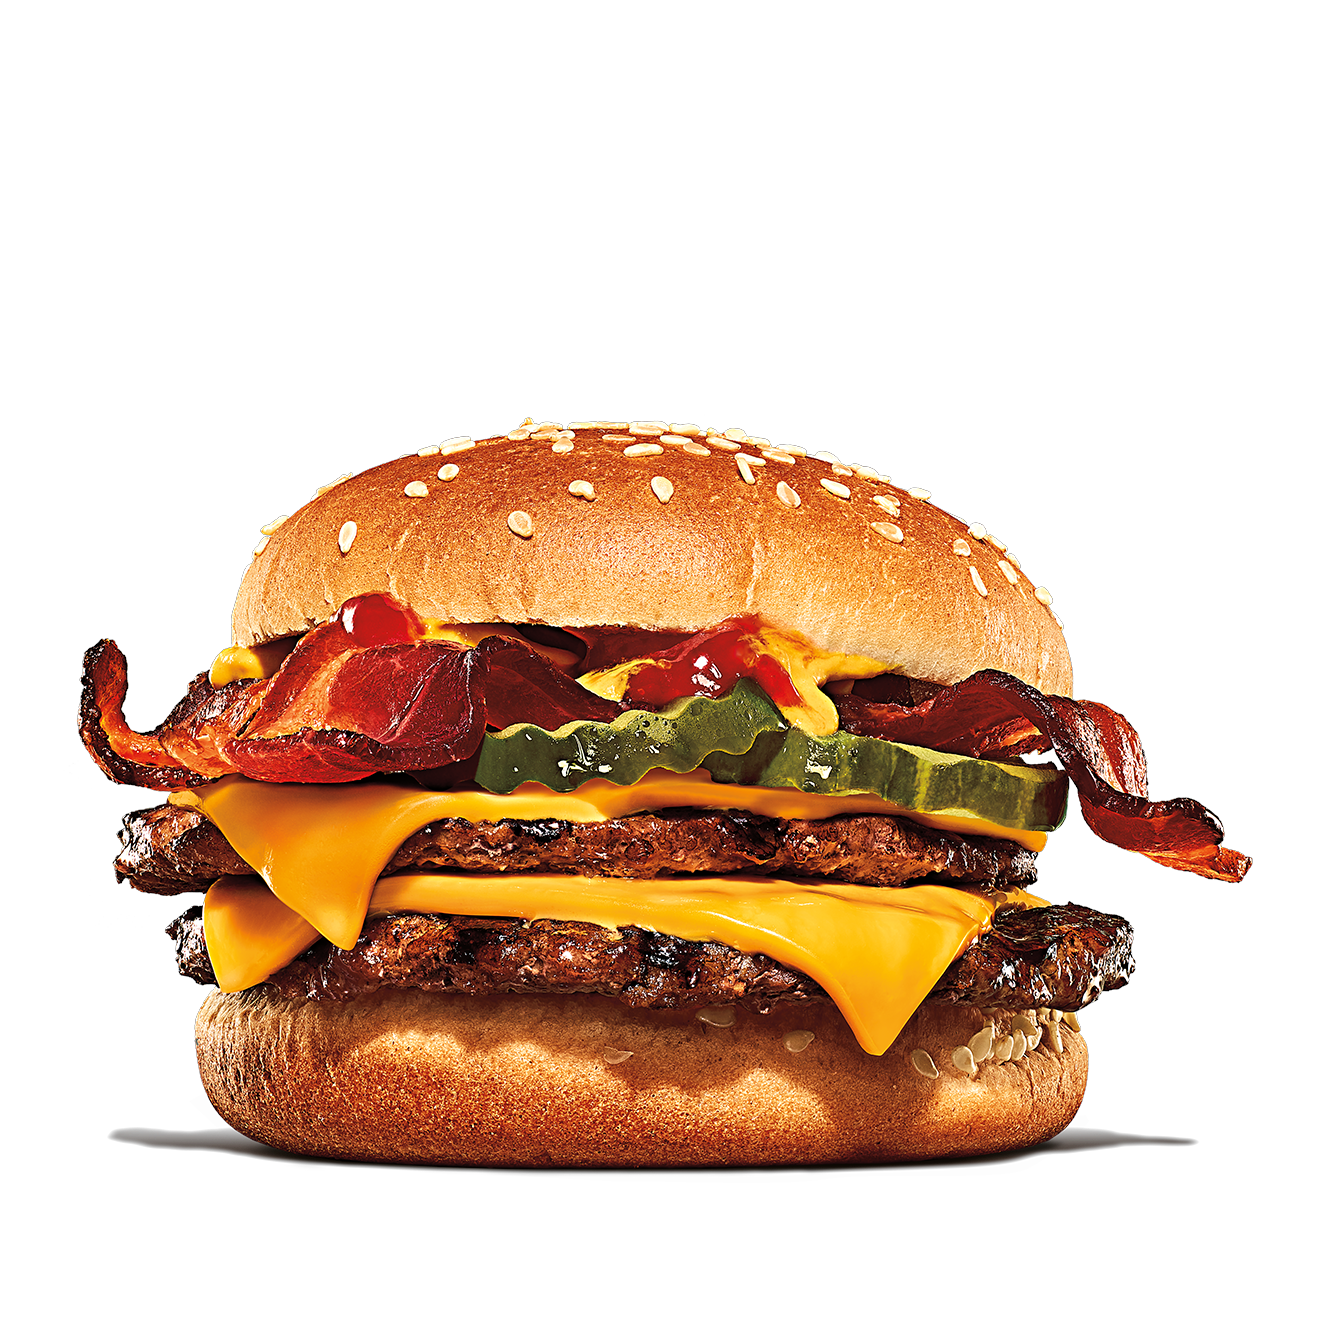 Calories in Burger King Bacon Double Cheeseburger